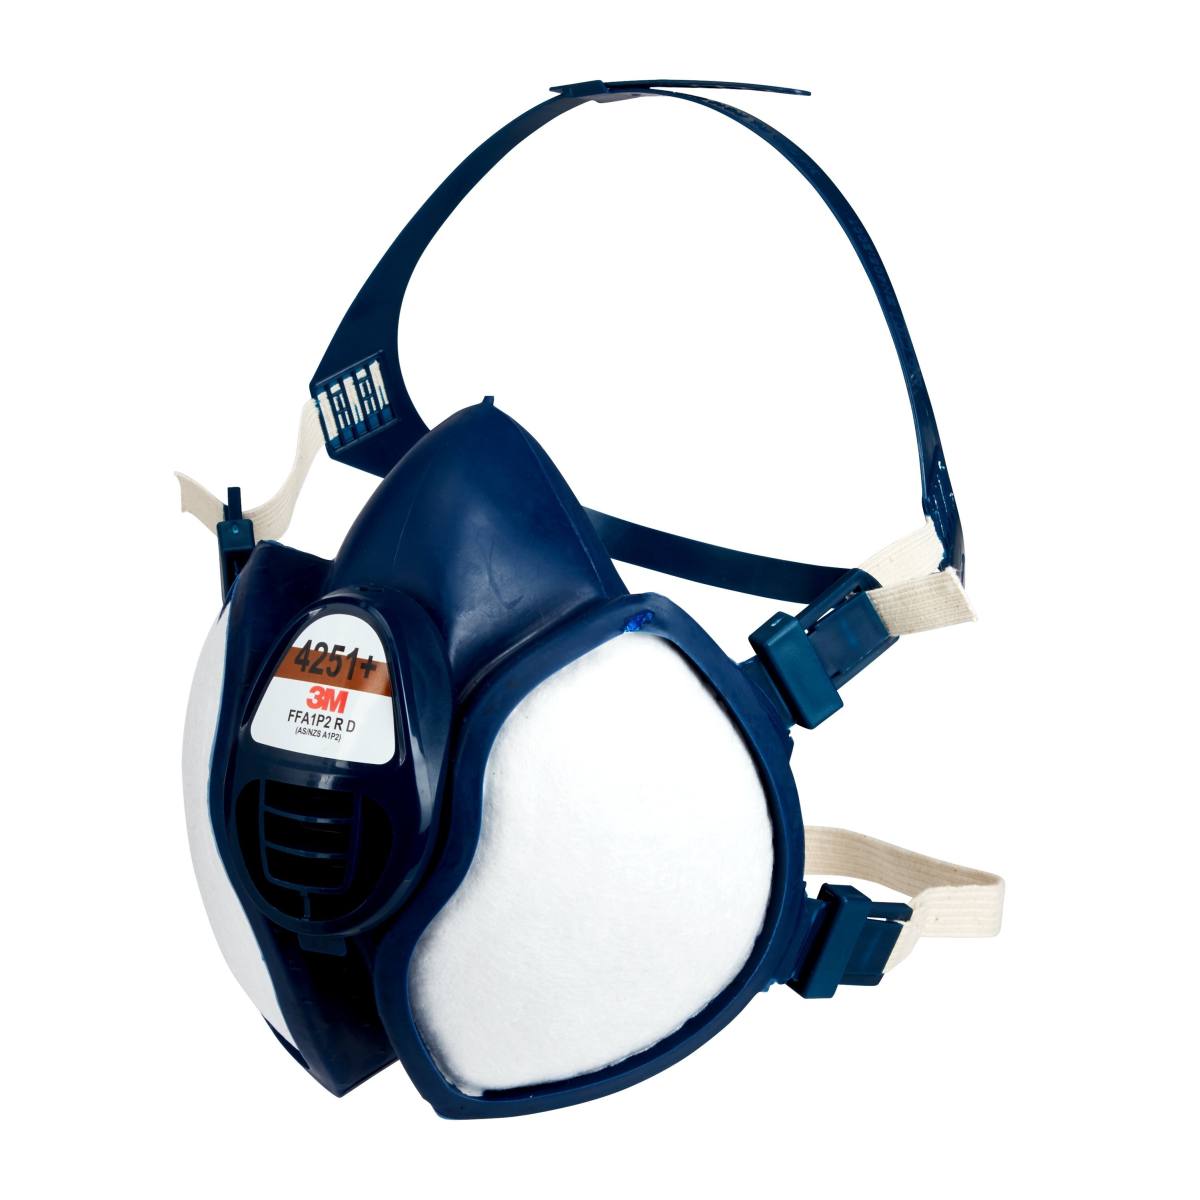 Respiratore 3M 4251 FFA1P2RD contro i gas e i vapori organici e le particelle fino a 10 volte il valore limite.